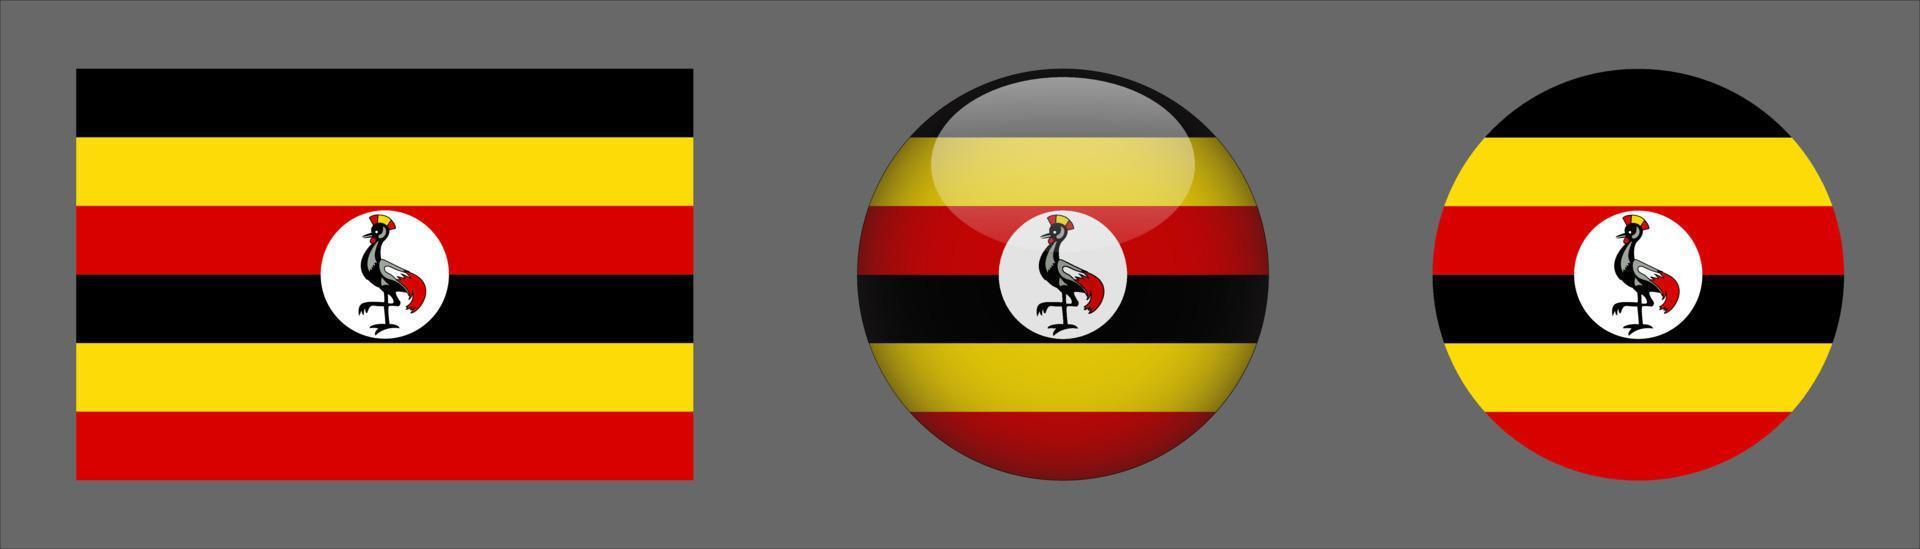 coleção do conjunto de bandeiras de Uganda, proporção do tamanho original, 3D arredondado, plano arredondado. vetor